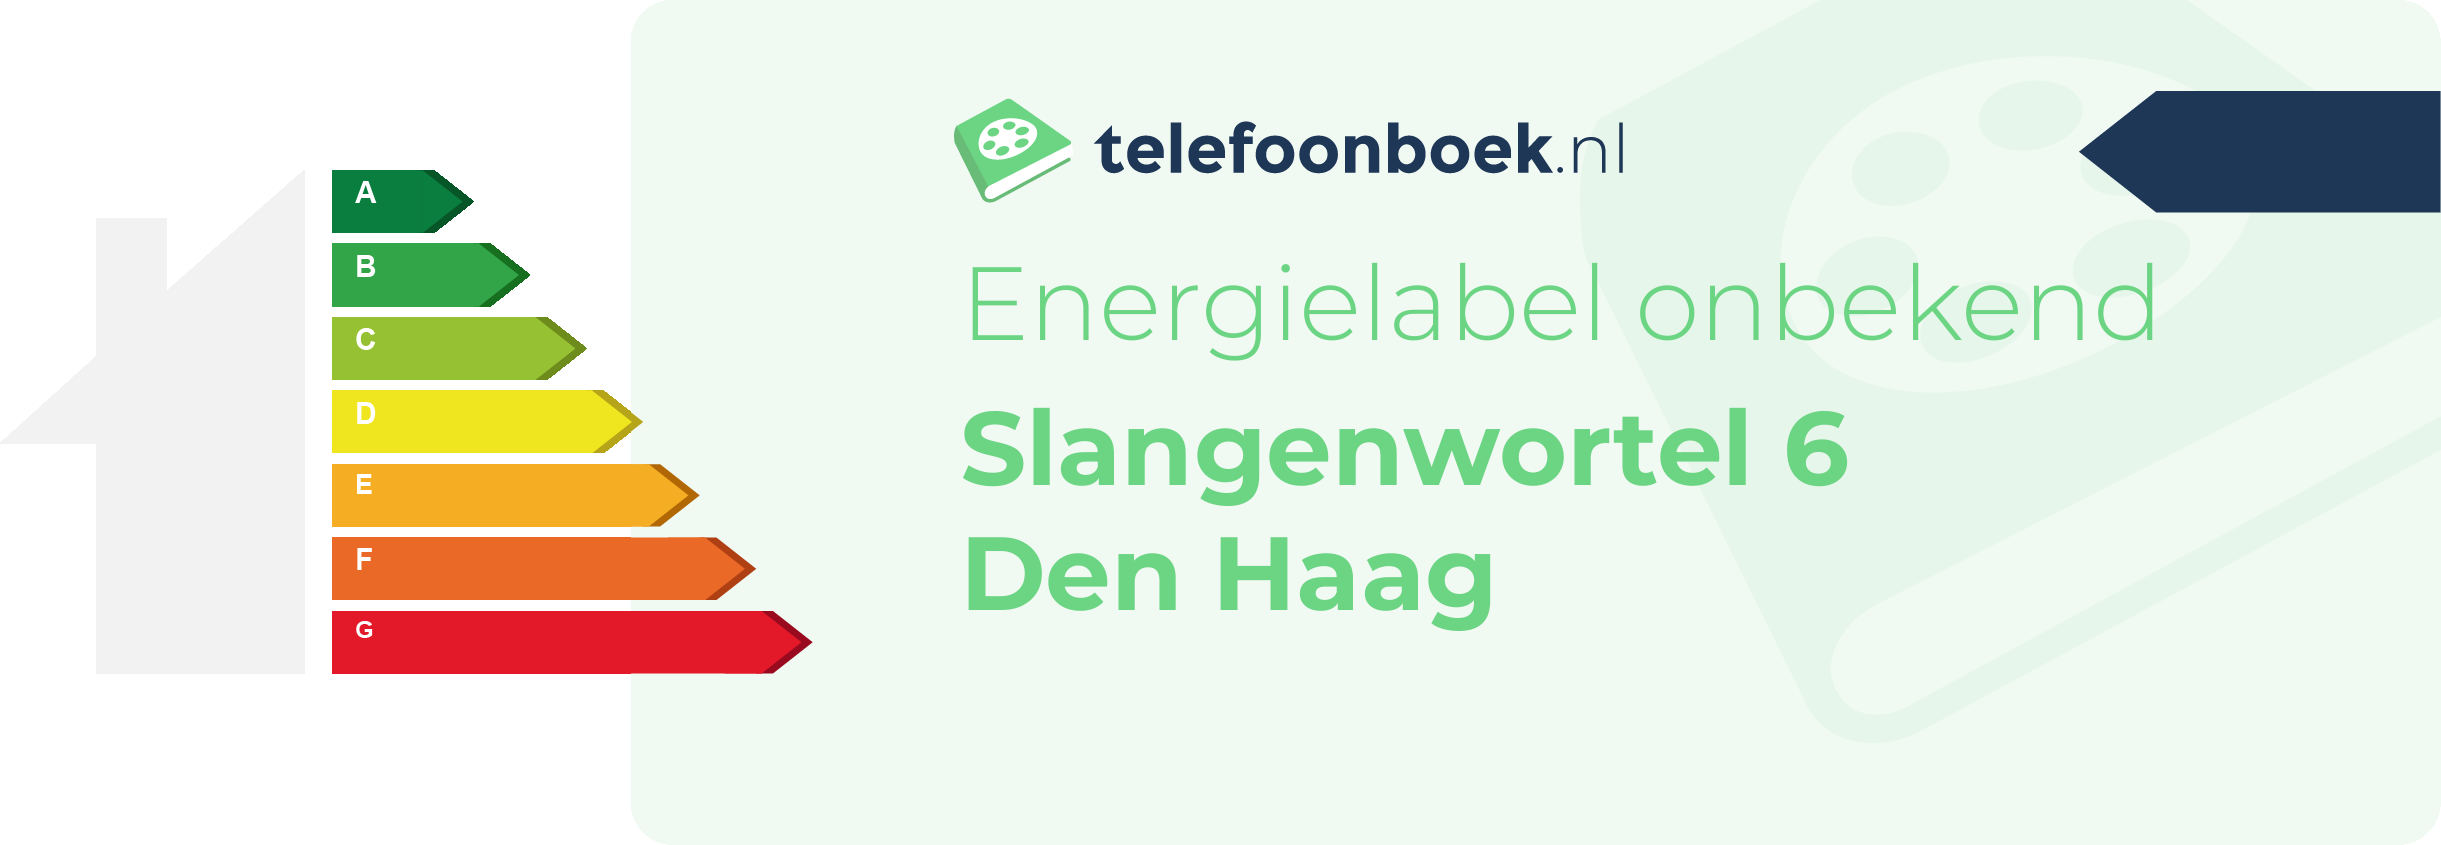 Energielabel Slangenwortel 6 Den Haag